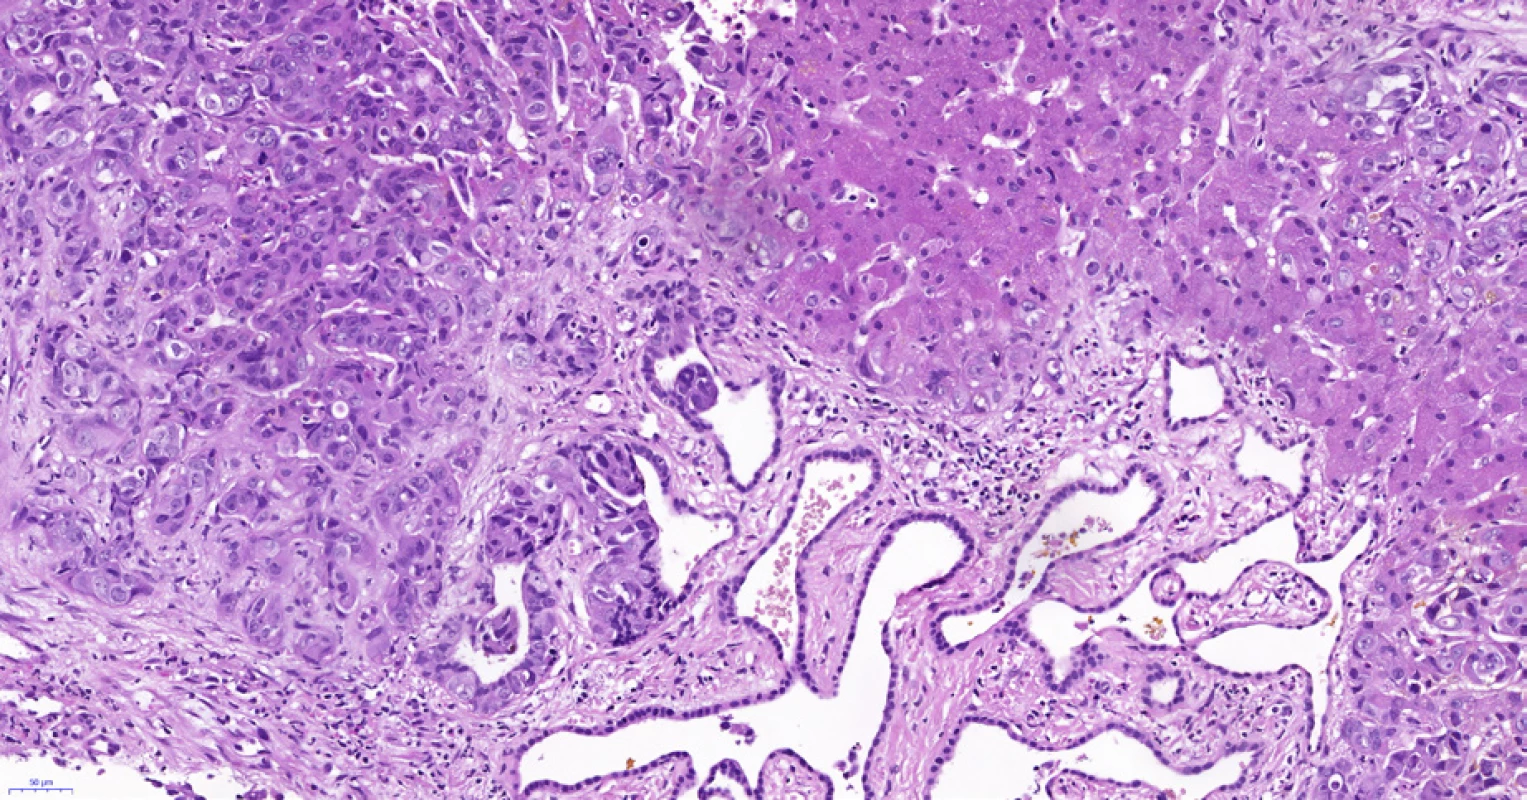 Periferní typ intrahepatálního cholangiocelulárního karcinomu, stejná biopsie jako na obr. 6 a 7. Adenokarcinom (vlevo nahoře) roste v těsné blízkosti (v terénu?) von Meyenburgova komplexu (uprostřed dole), který je tvořen angulovanými žlázkami vystlanými plochým až kubickým biliárním epitelem bez atypií. Vpravo je nenádorový parenchym jater. Histologický řez z punkční biopsie, hematoxylin-eozin, 20×.